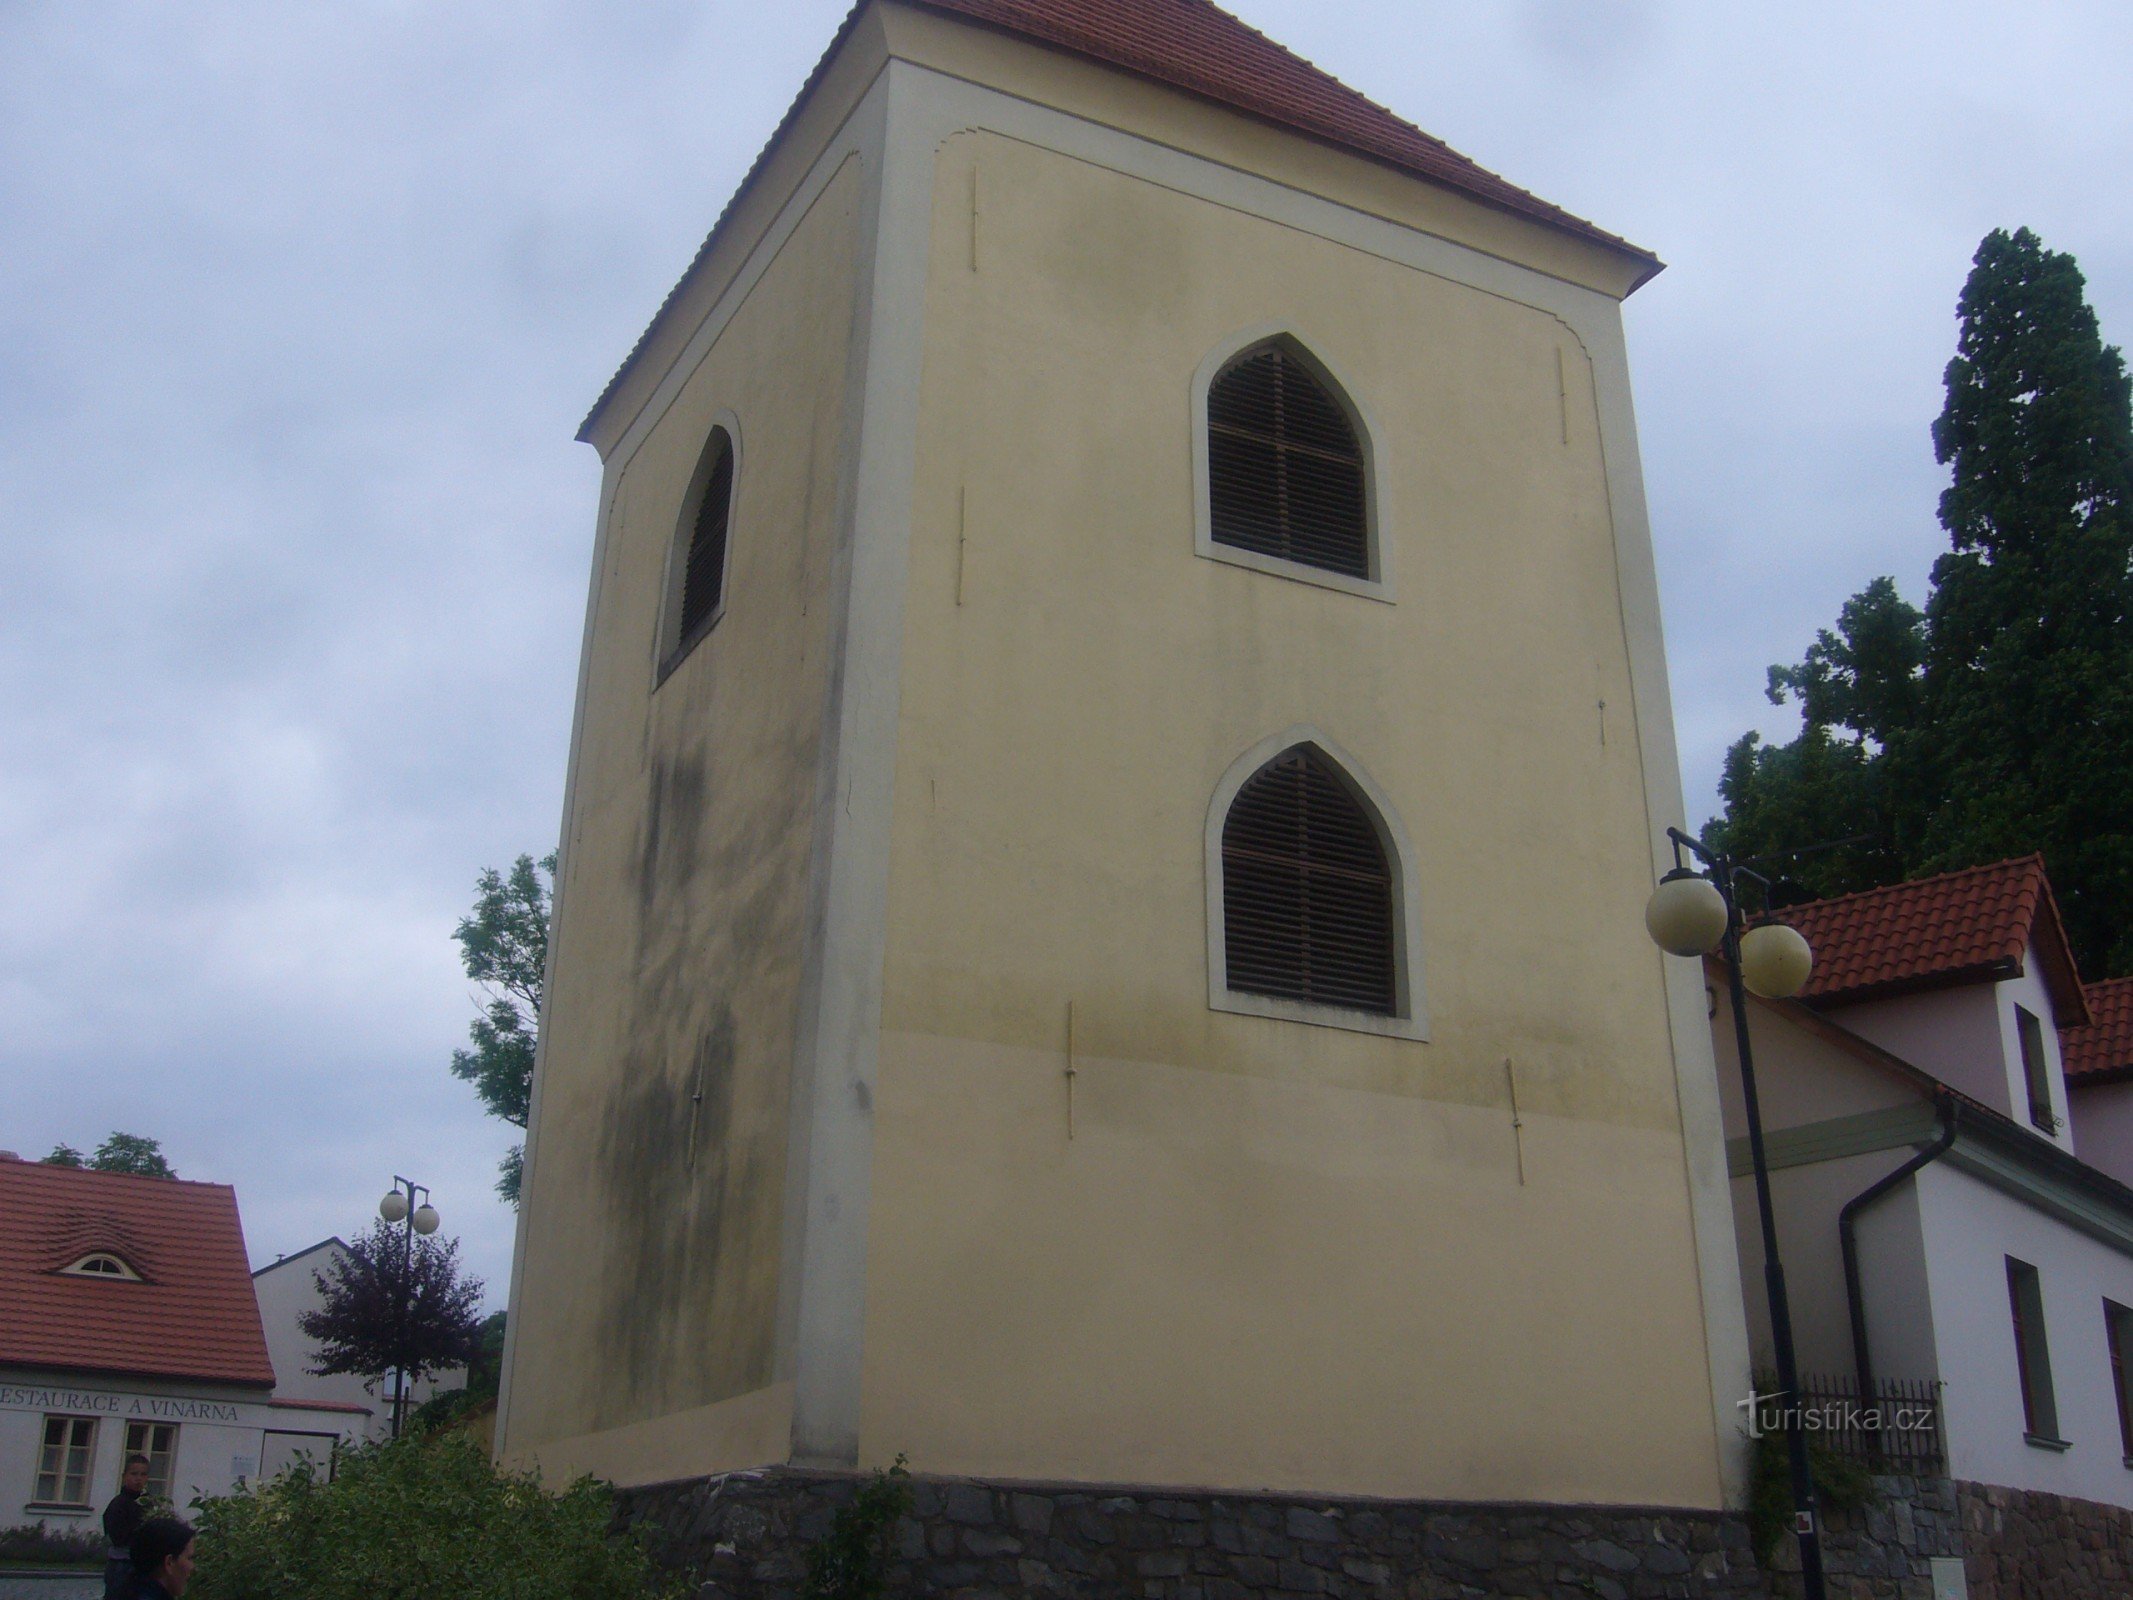 Castelo de Konopiště